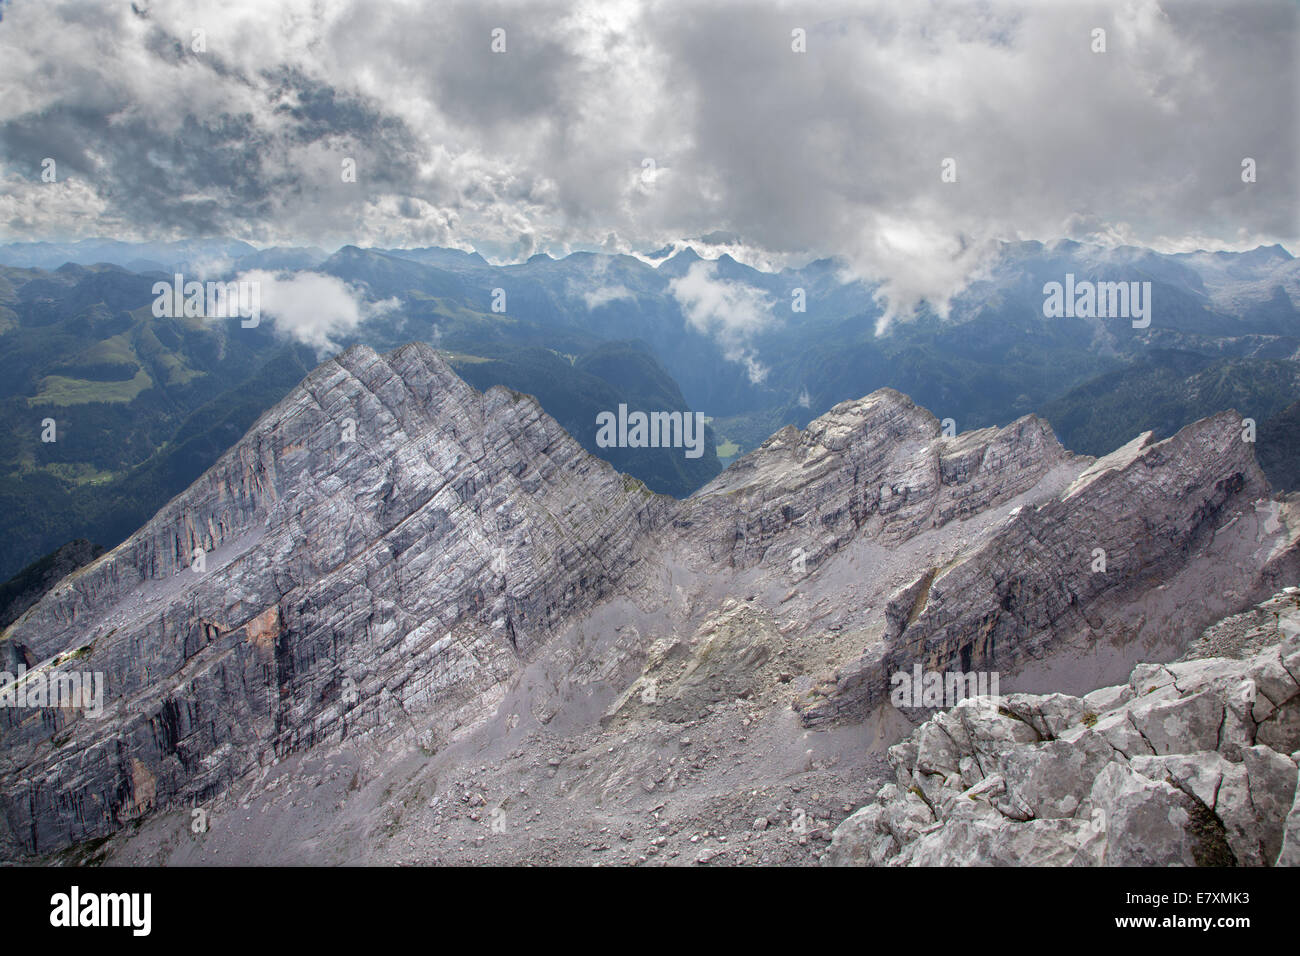 Alps - outlook from Watzmann peak Stock Photo